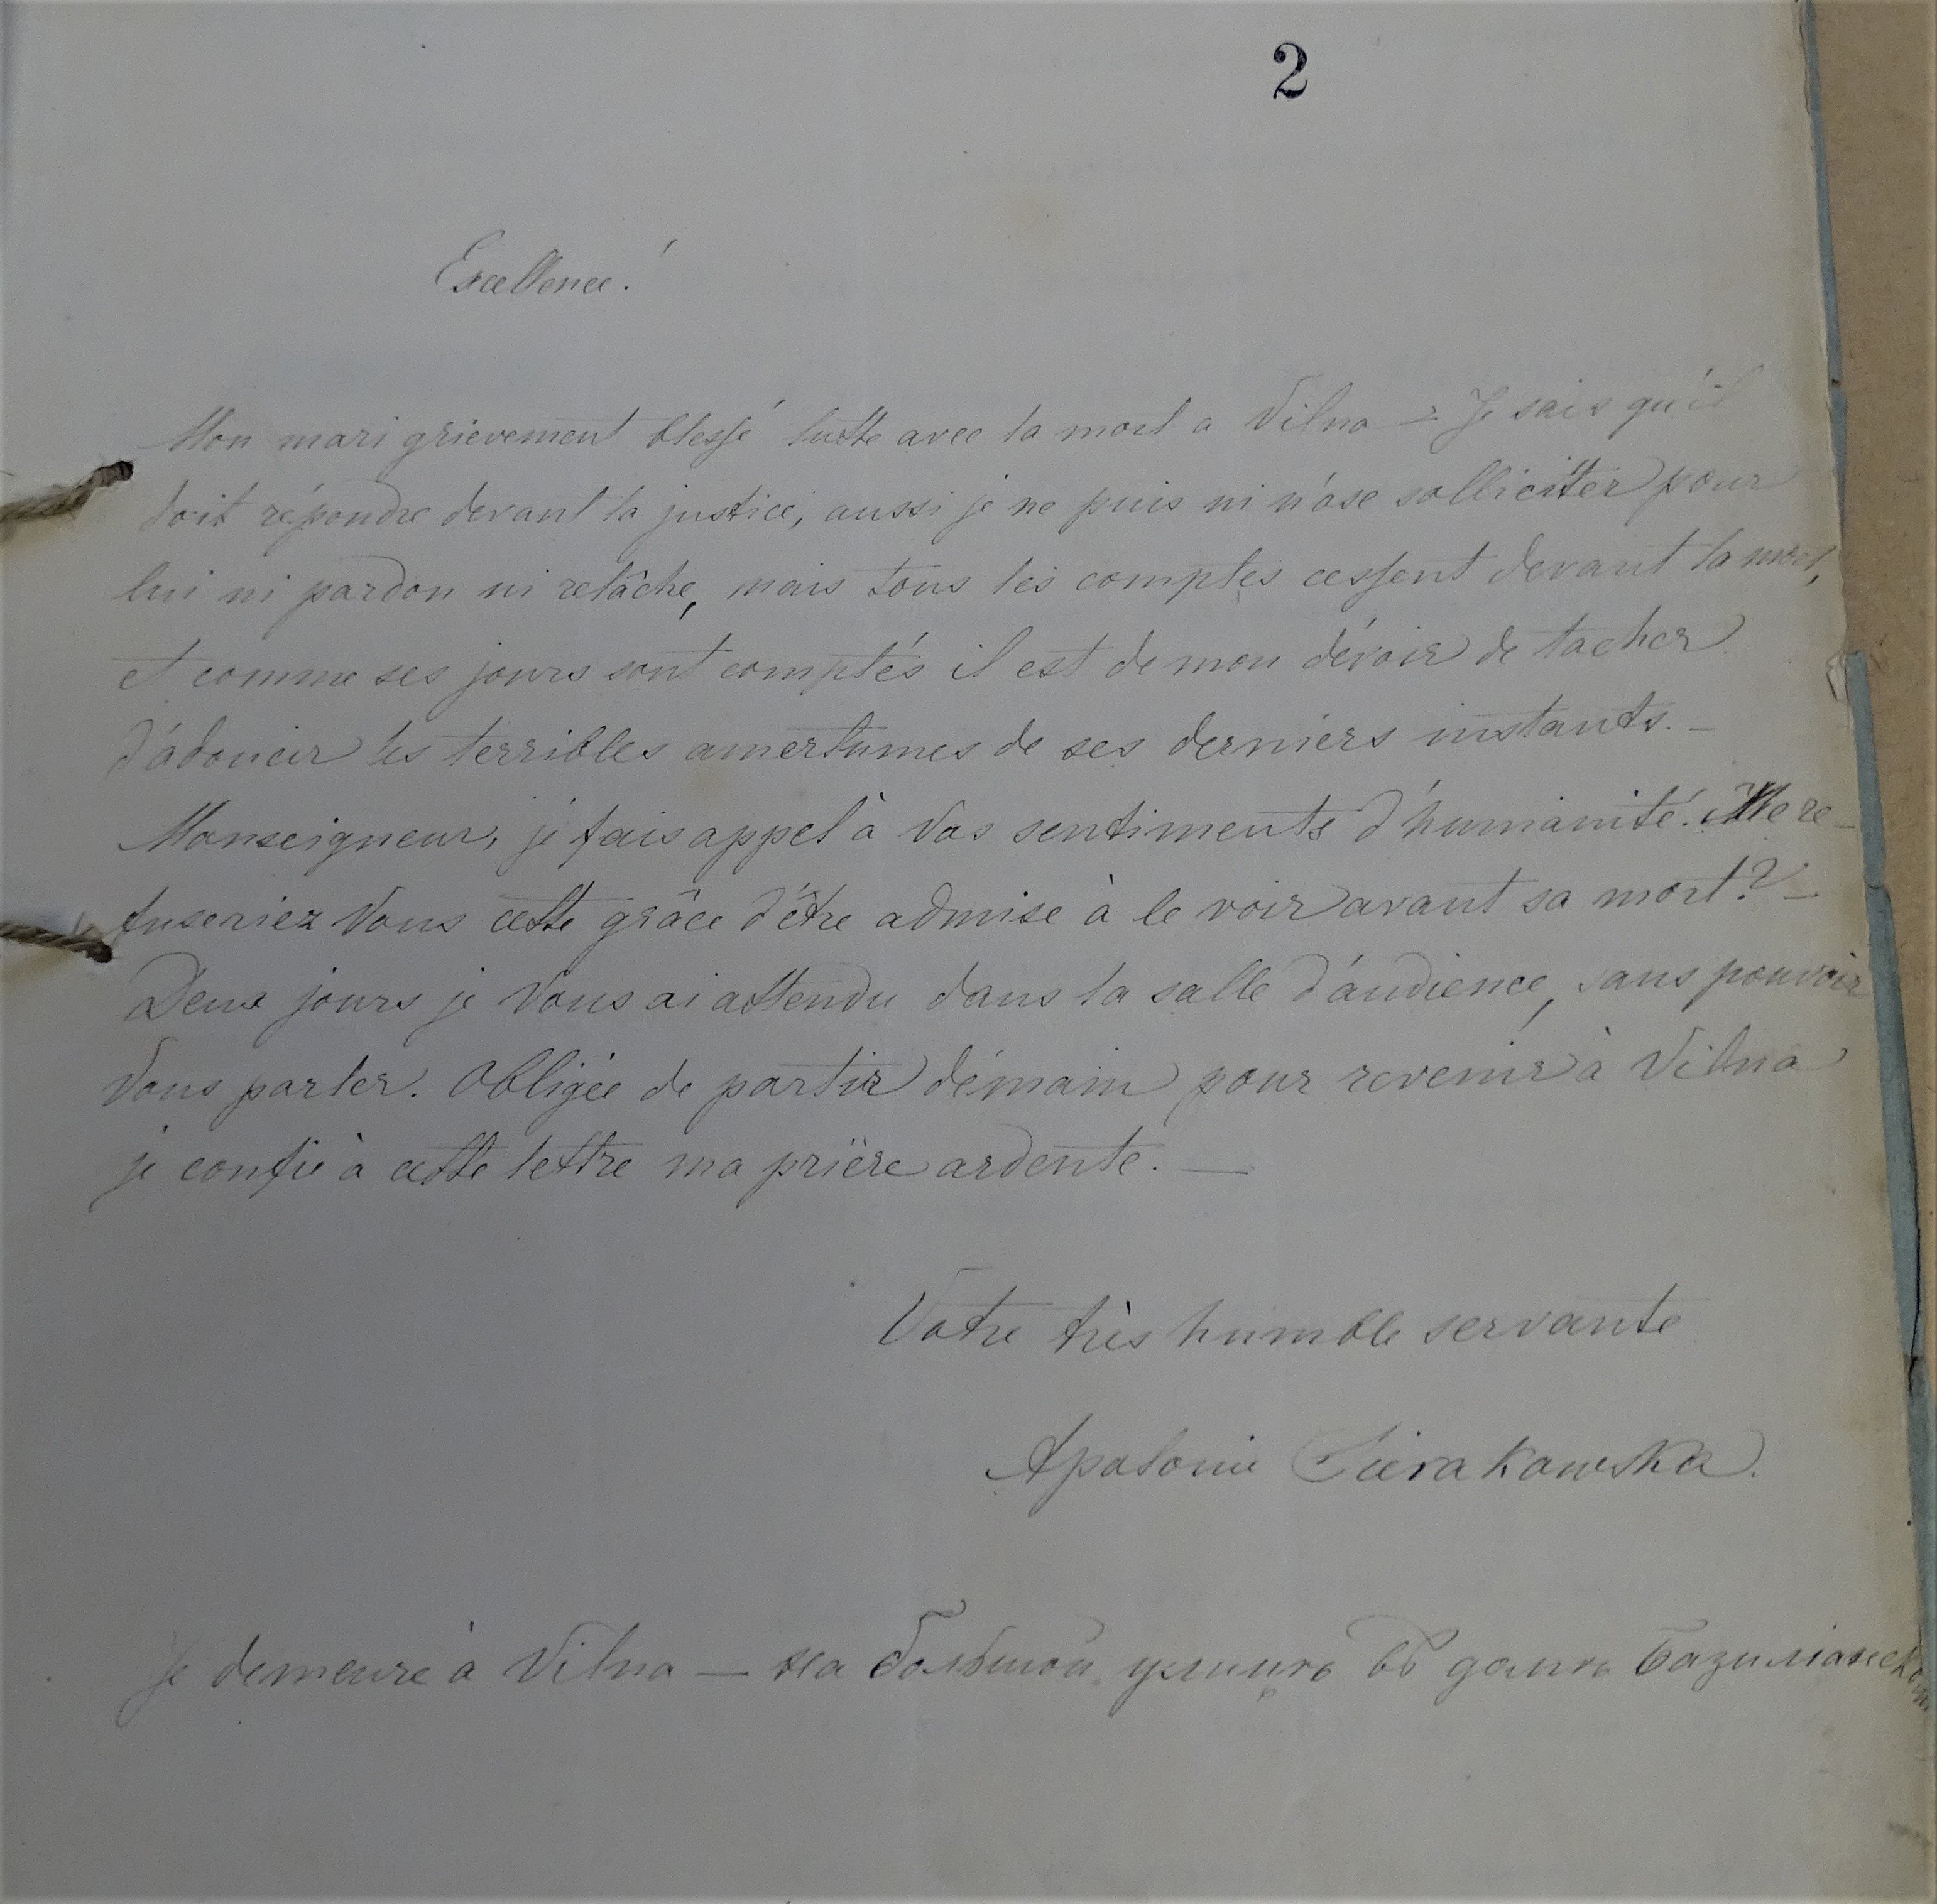 Письмо Аполлонии императору Александру II, в котором она просит разрешения увидеться со своим заключенным в тюрьму мужем З. Серакаускасом